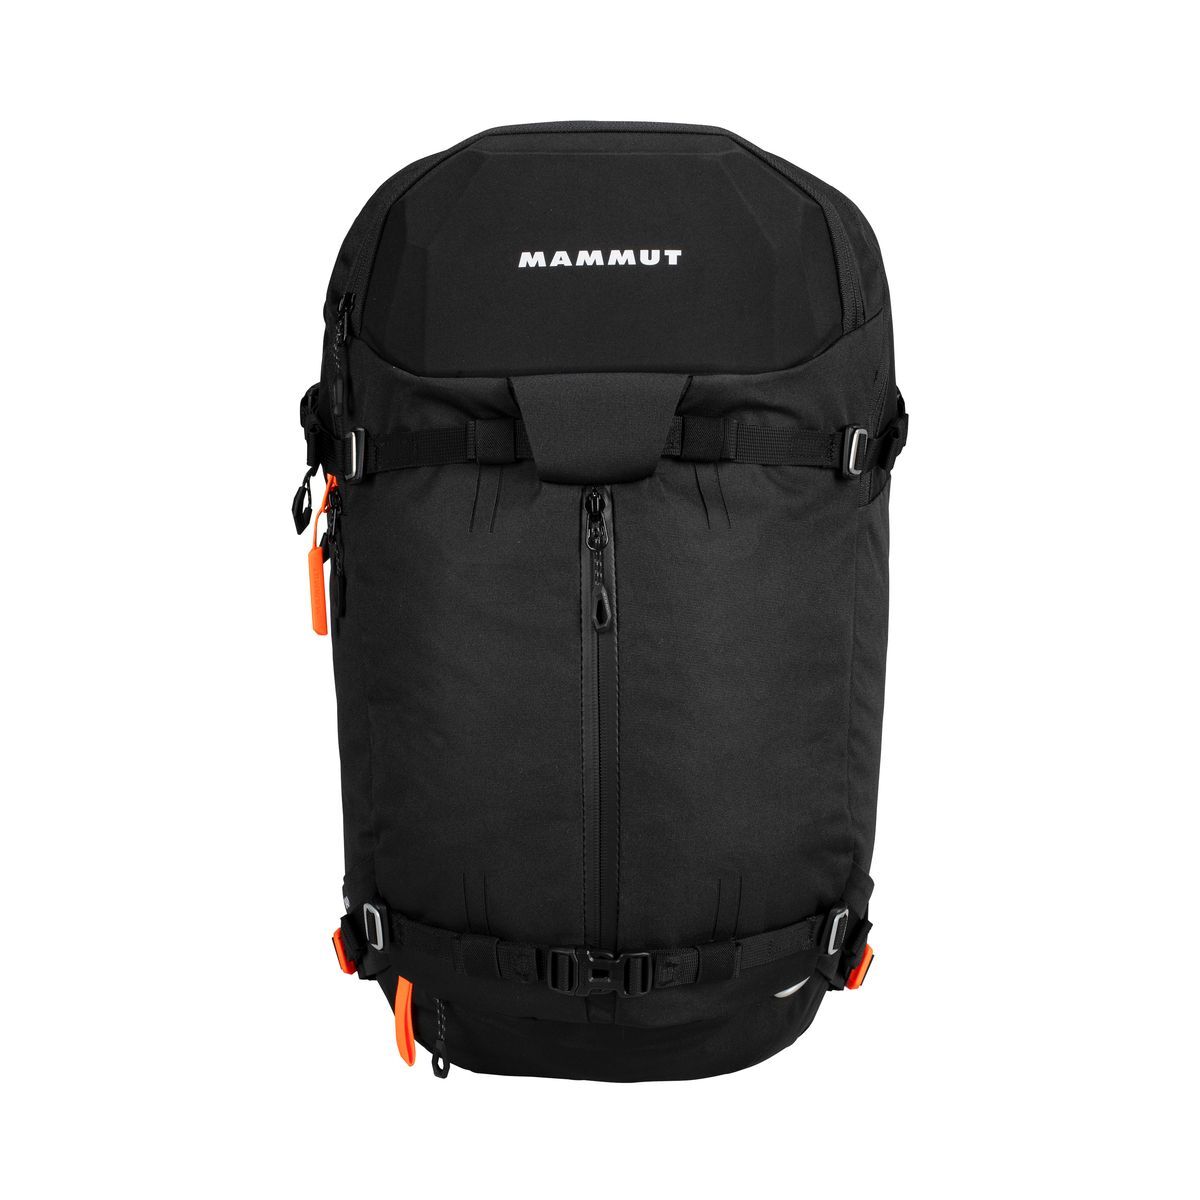 Mammut Nirvana 35 - Ski backpack